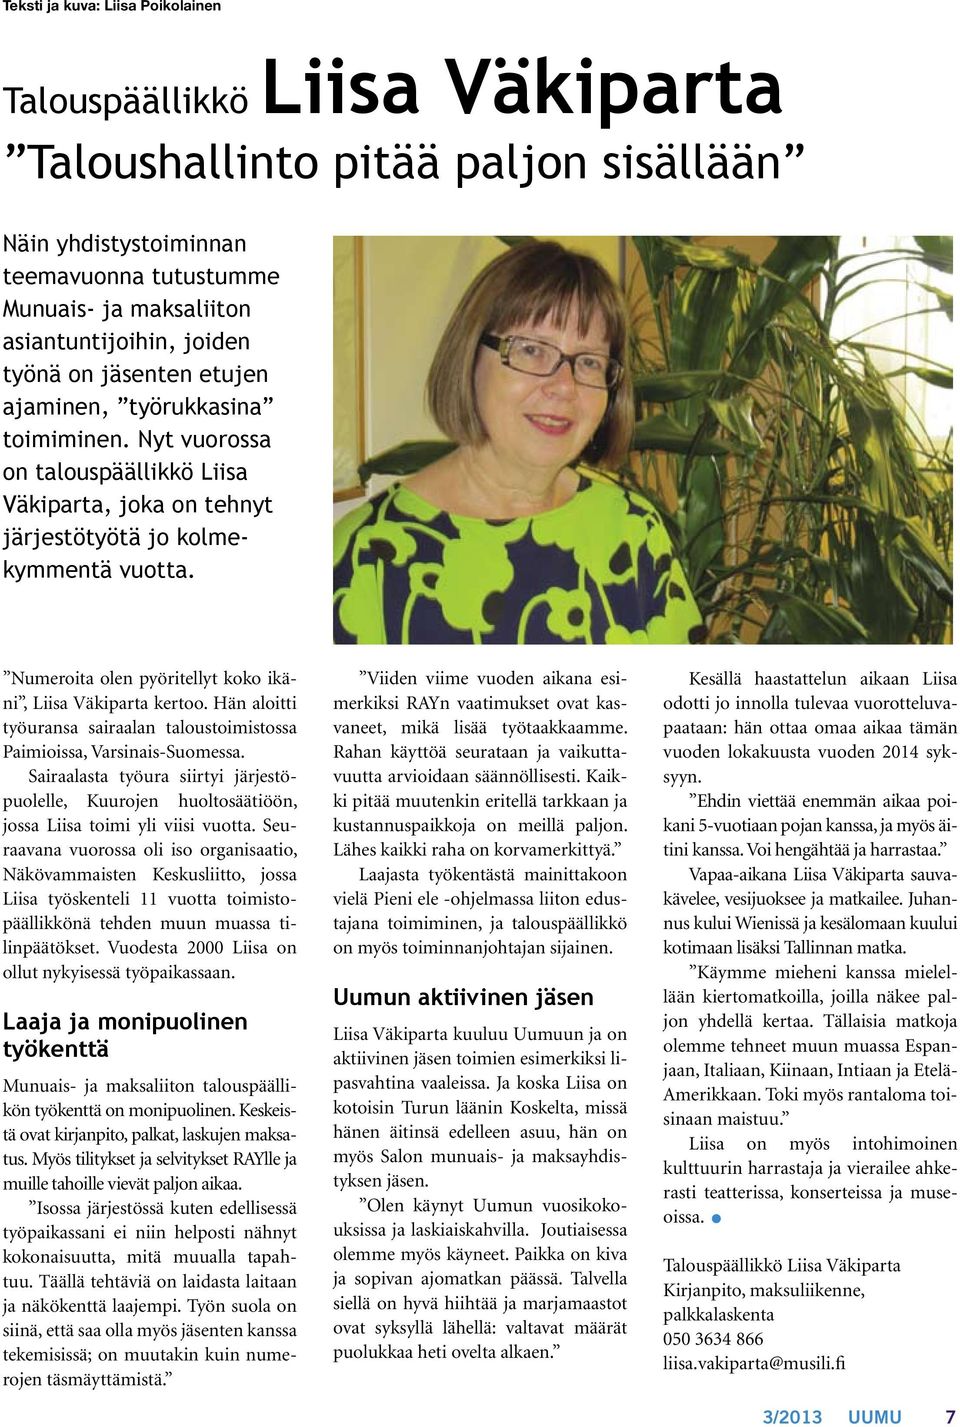 Numeroita olen pyöritellyt koko ikäni, Liisa Väkiparta kertoo. Hän aloitti työuransa sairaalan taloustoimistossa Paimioissa, Varsinais-Suomessa.